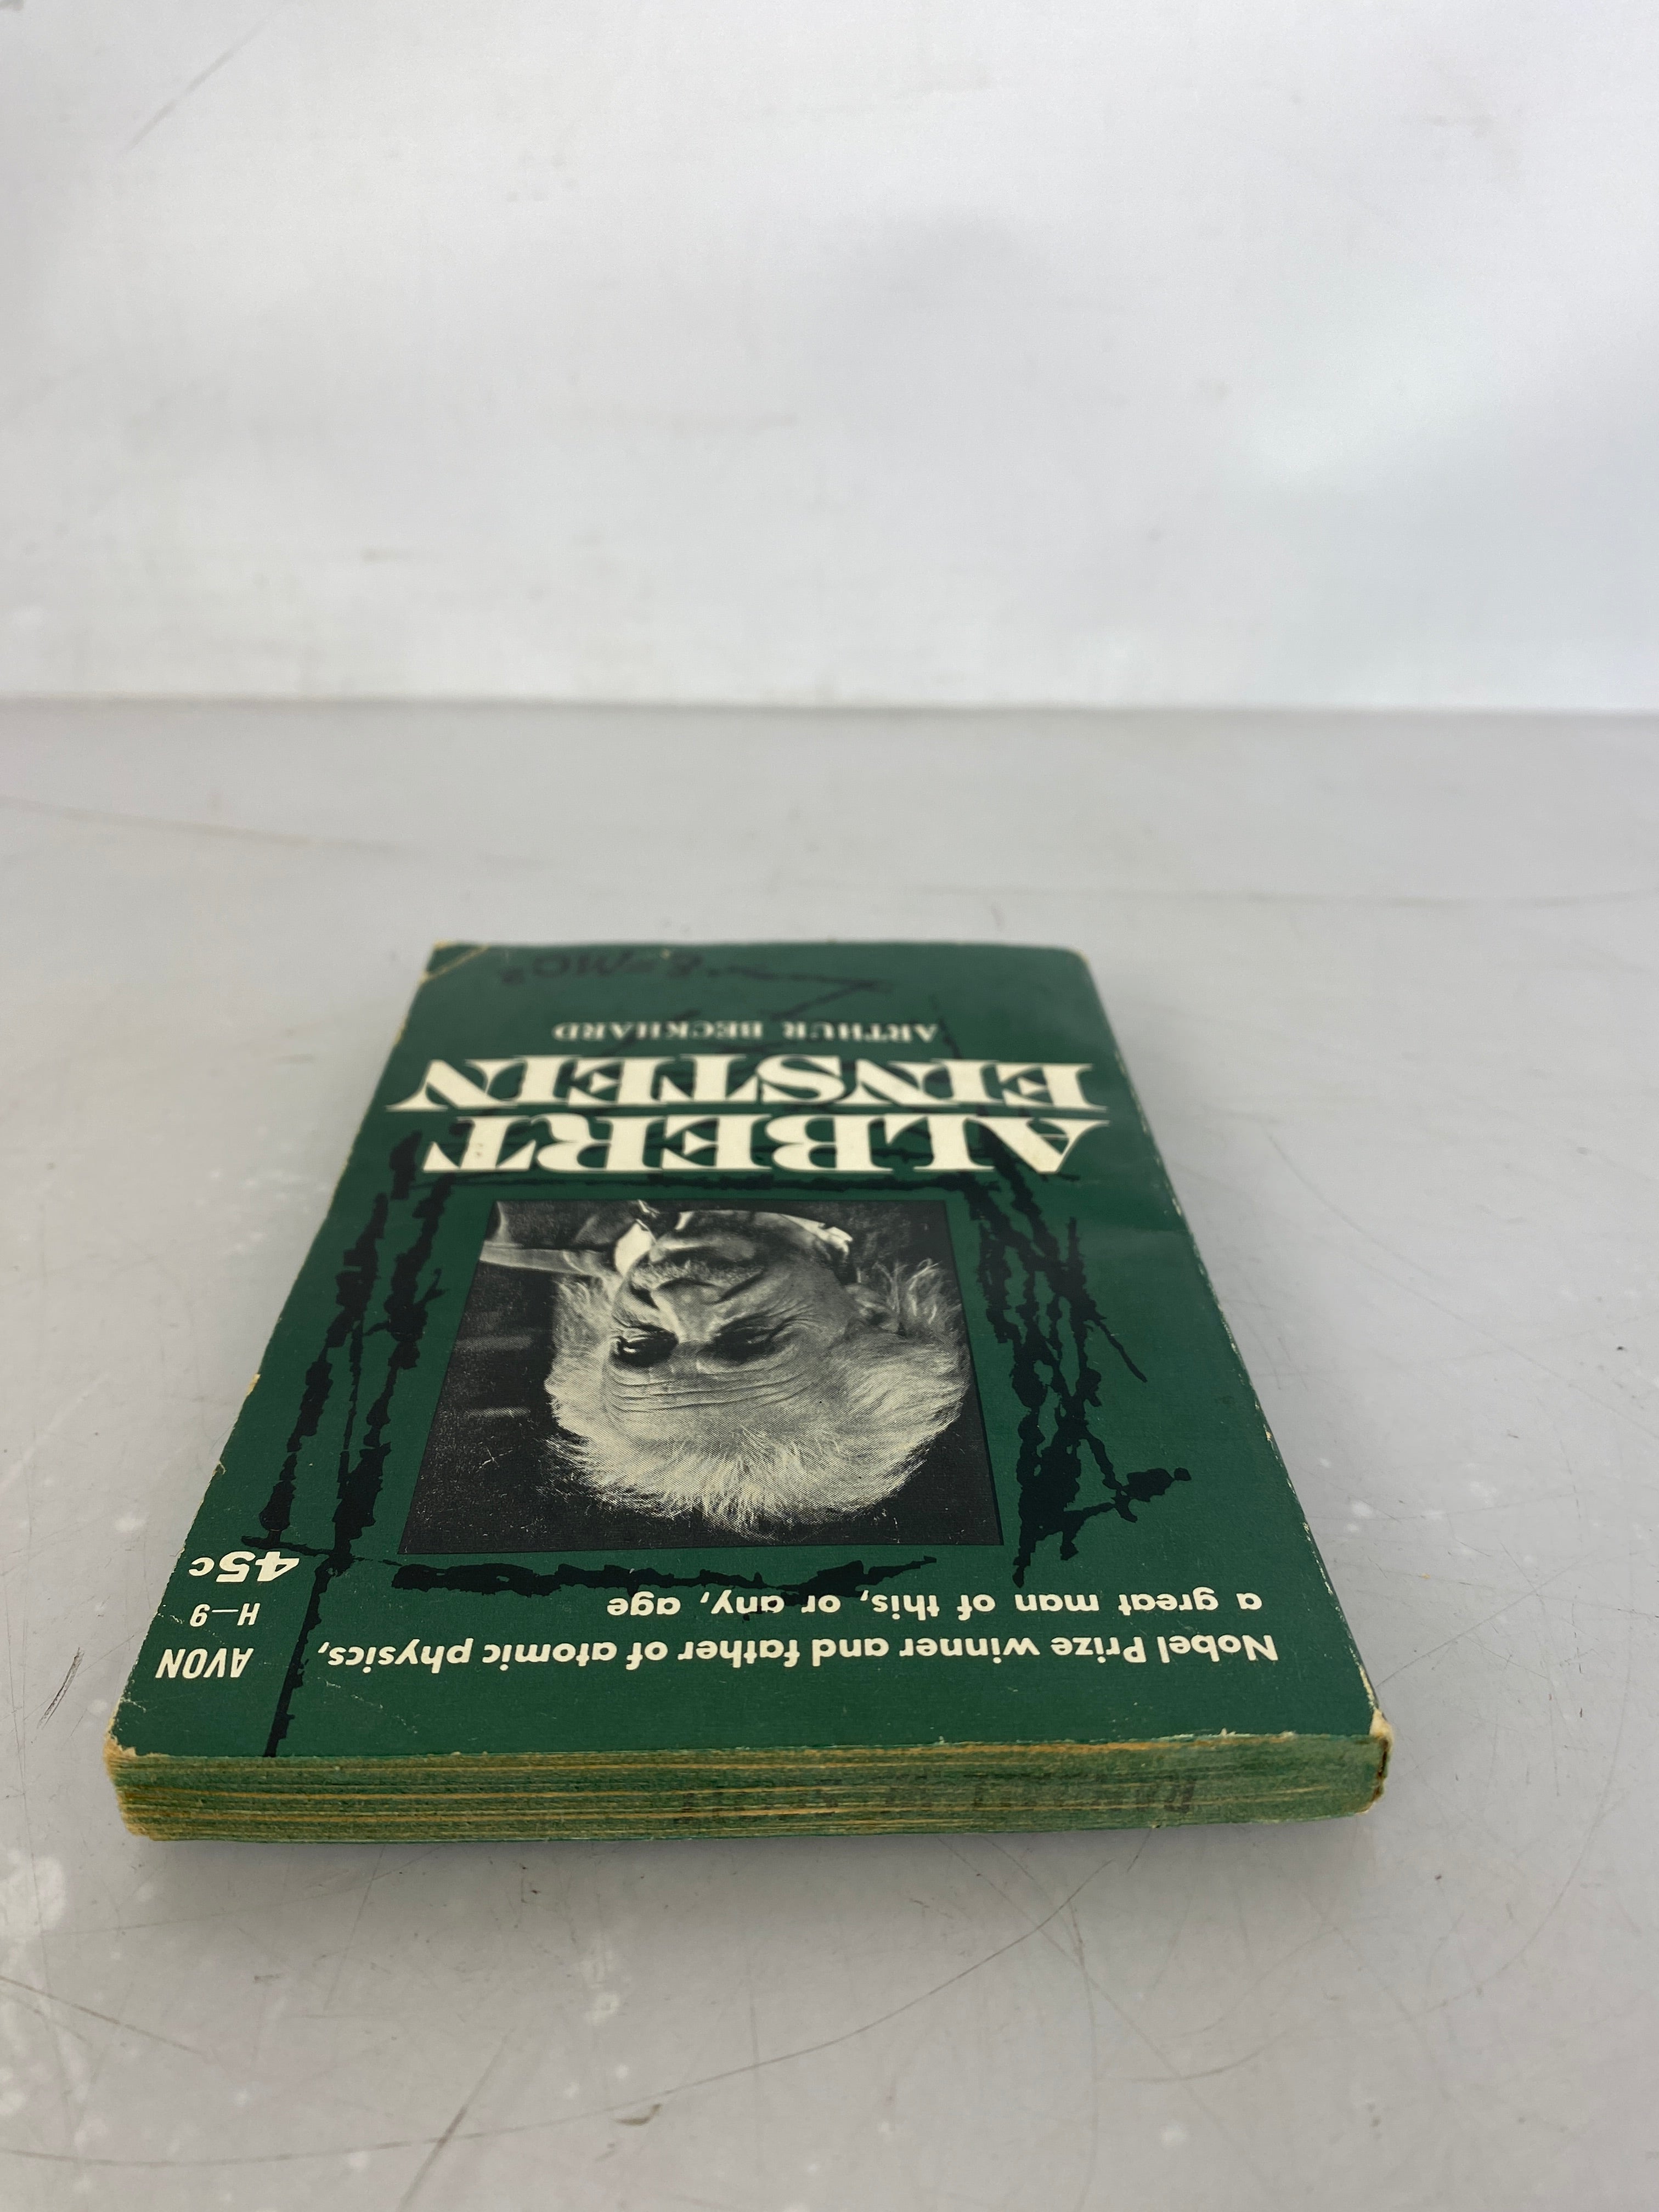 Lot of 3 Albert Einstein Books 1949-1959 SC